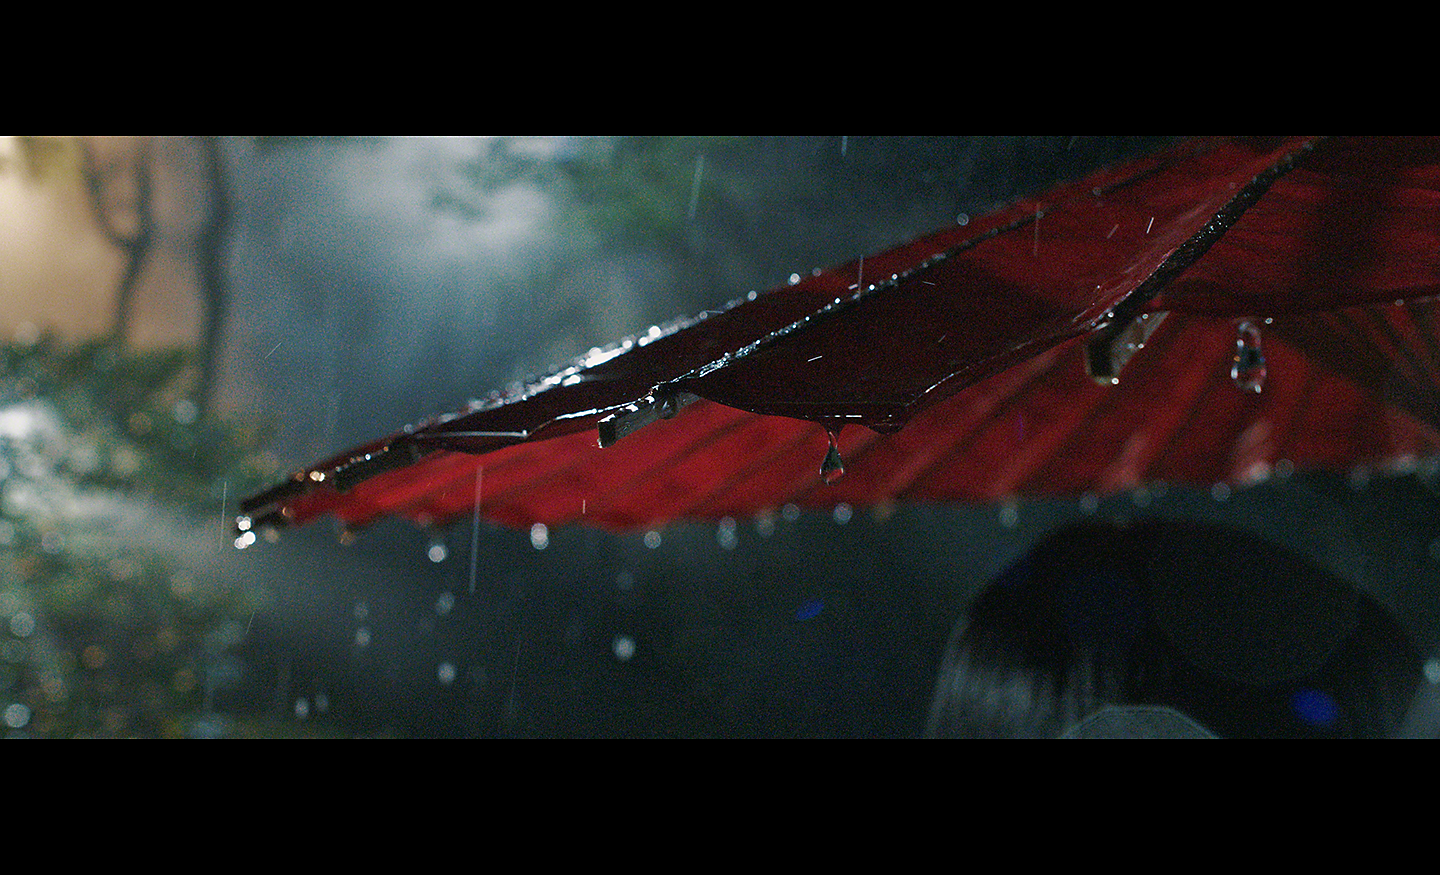 Snímek deště skapávajícího z červeného slunečníku pořízený za slabého osvětlení